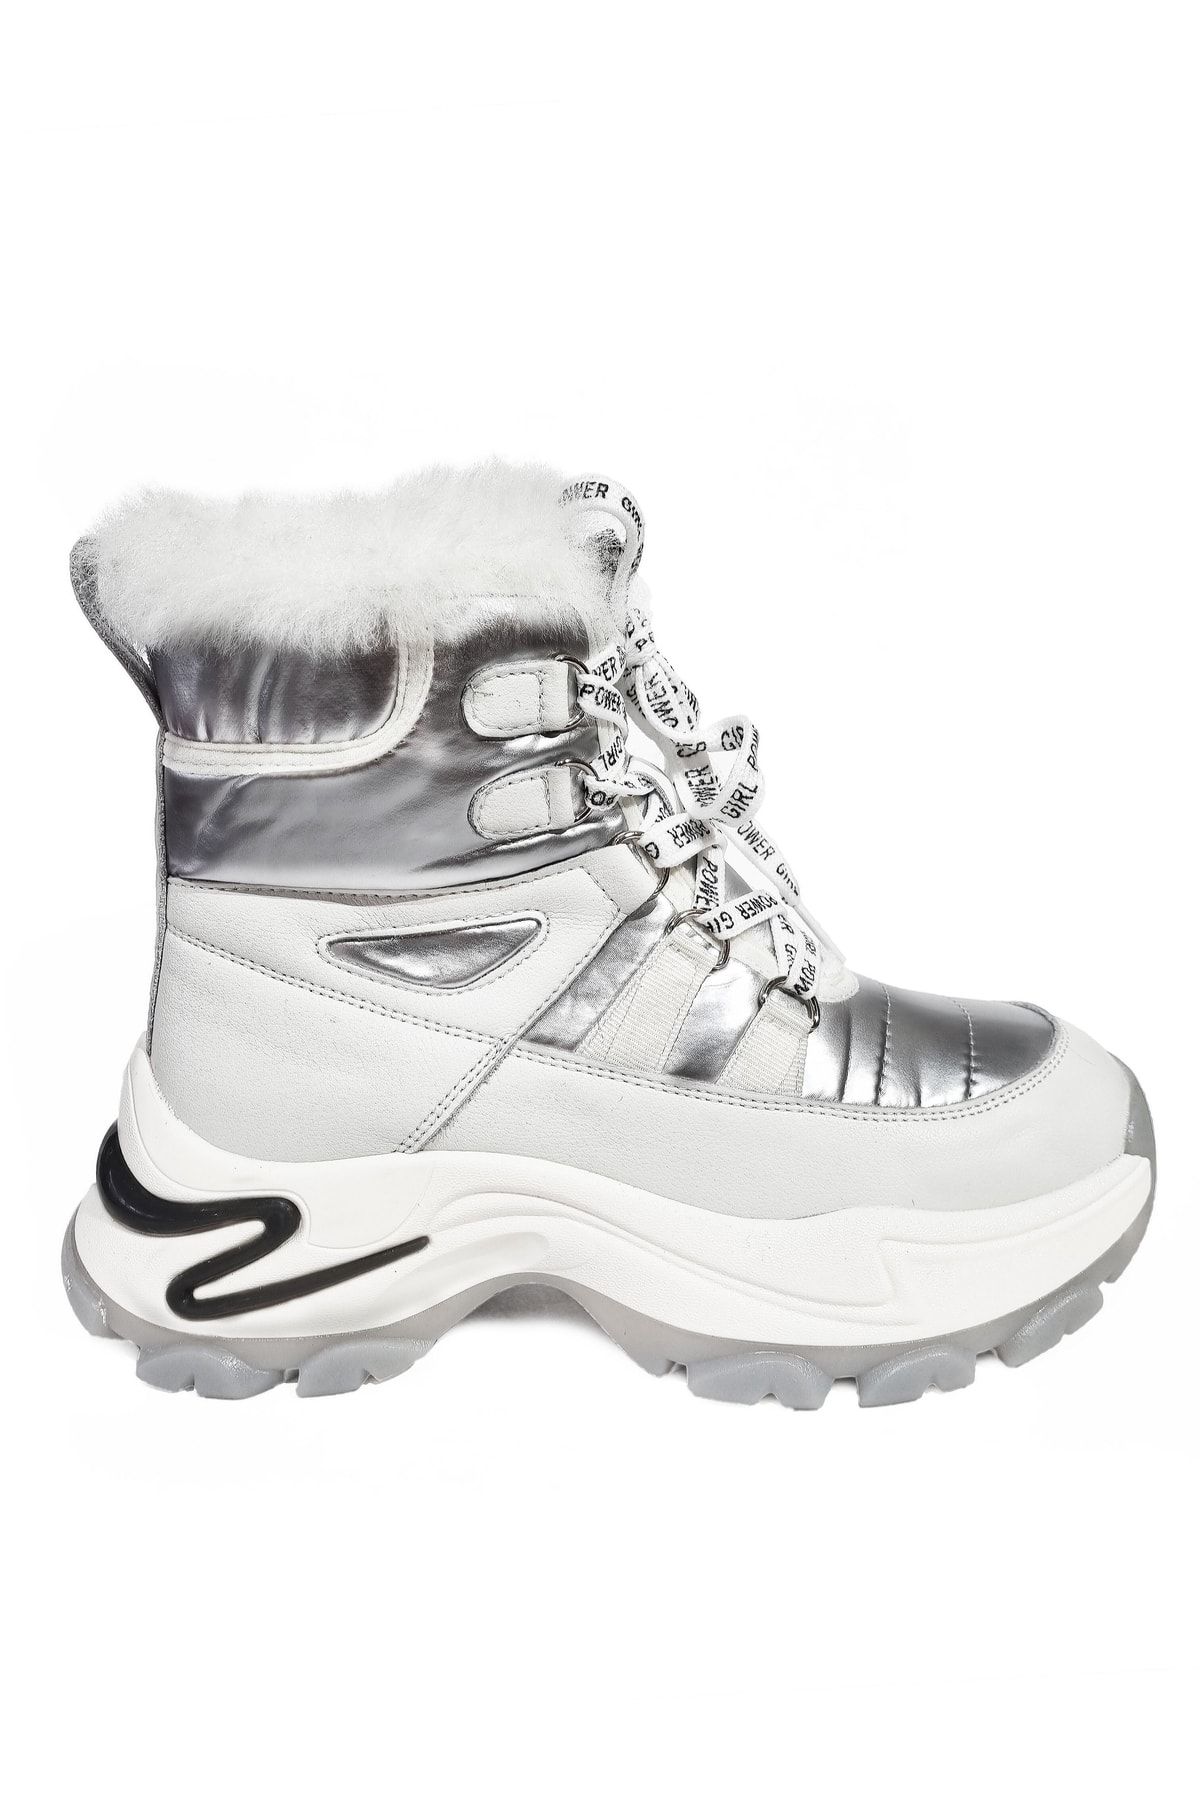 Guja Kadın İçi Kürklü Hakiki Deri Ve Chrome Kumaş Kaymaz Taban Şık Kışlık Bot Winter Women Boots